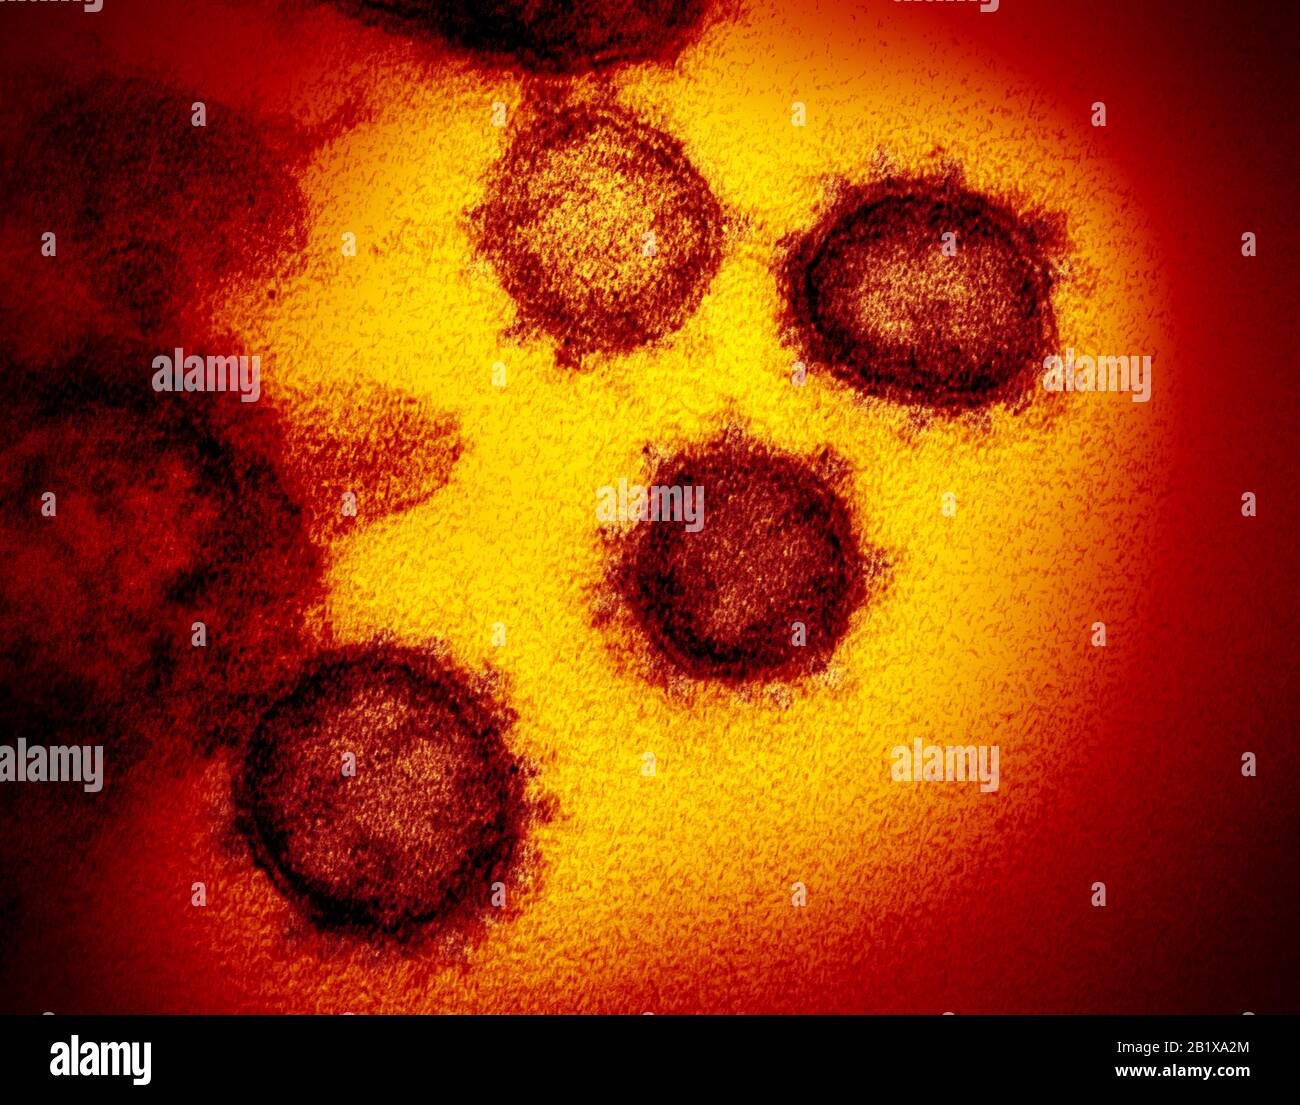 COVID-19. Nuova immagine per microscopio elettronico a trasmissione Coronavirus SARS-COV-2. Questa immagine per microscopio elettronico a trasmissione mostra SARS-COV-2, noto anche come 2019-nCoV, il virus che causa COVID-19. Isolato da un paziente negli Stati Uniti, che emerge dalla superficie delle cellule coltivate in laboratorio. Credito: NIAID-RML Foto Stock